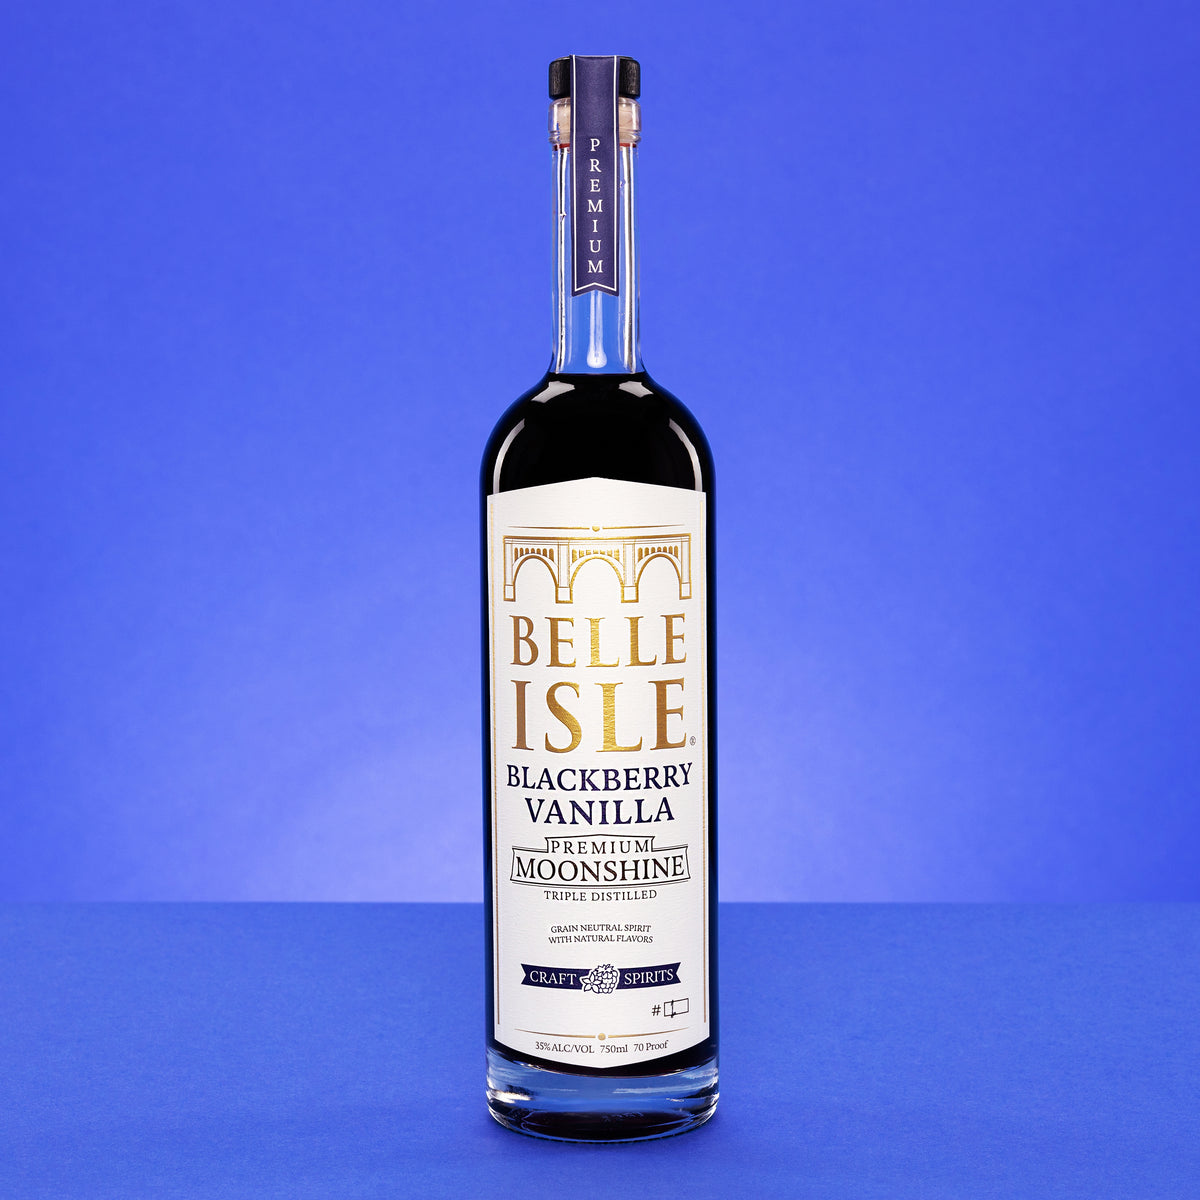 Belle Isle Blackberry Vanilla